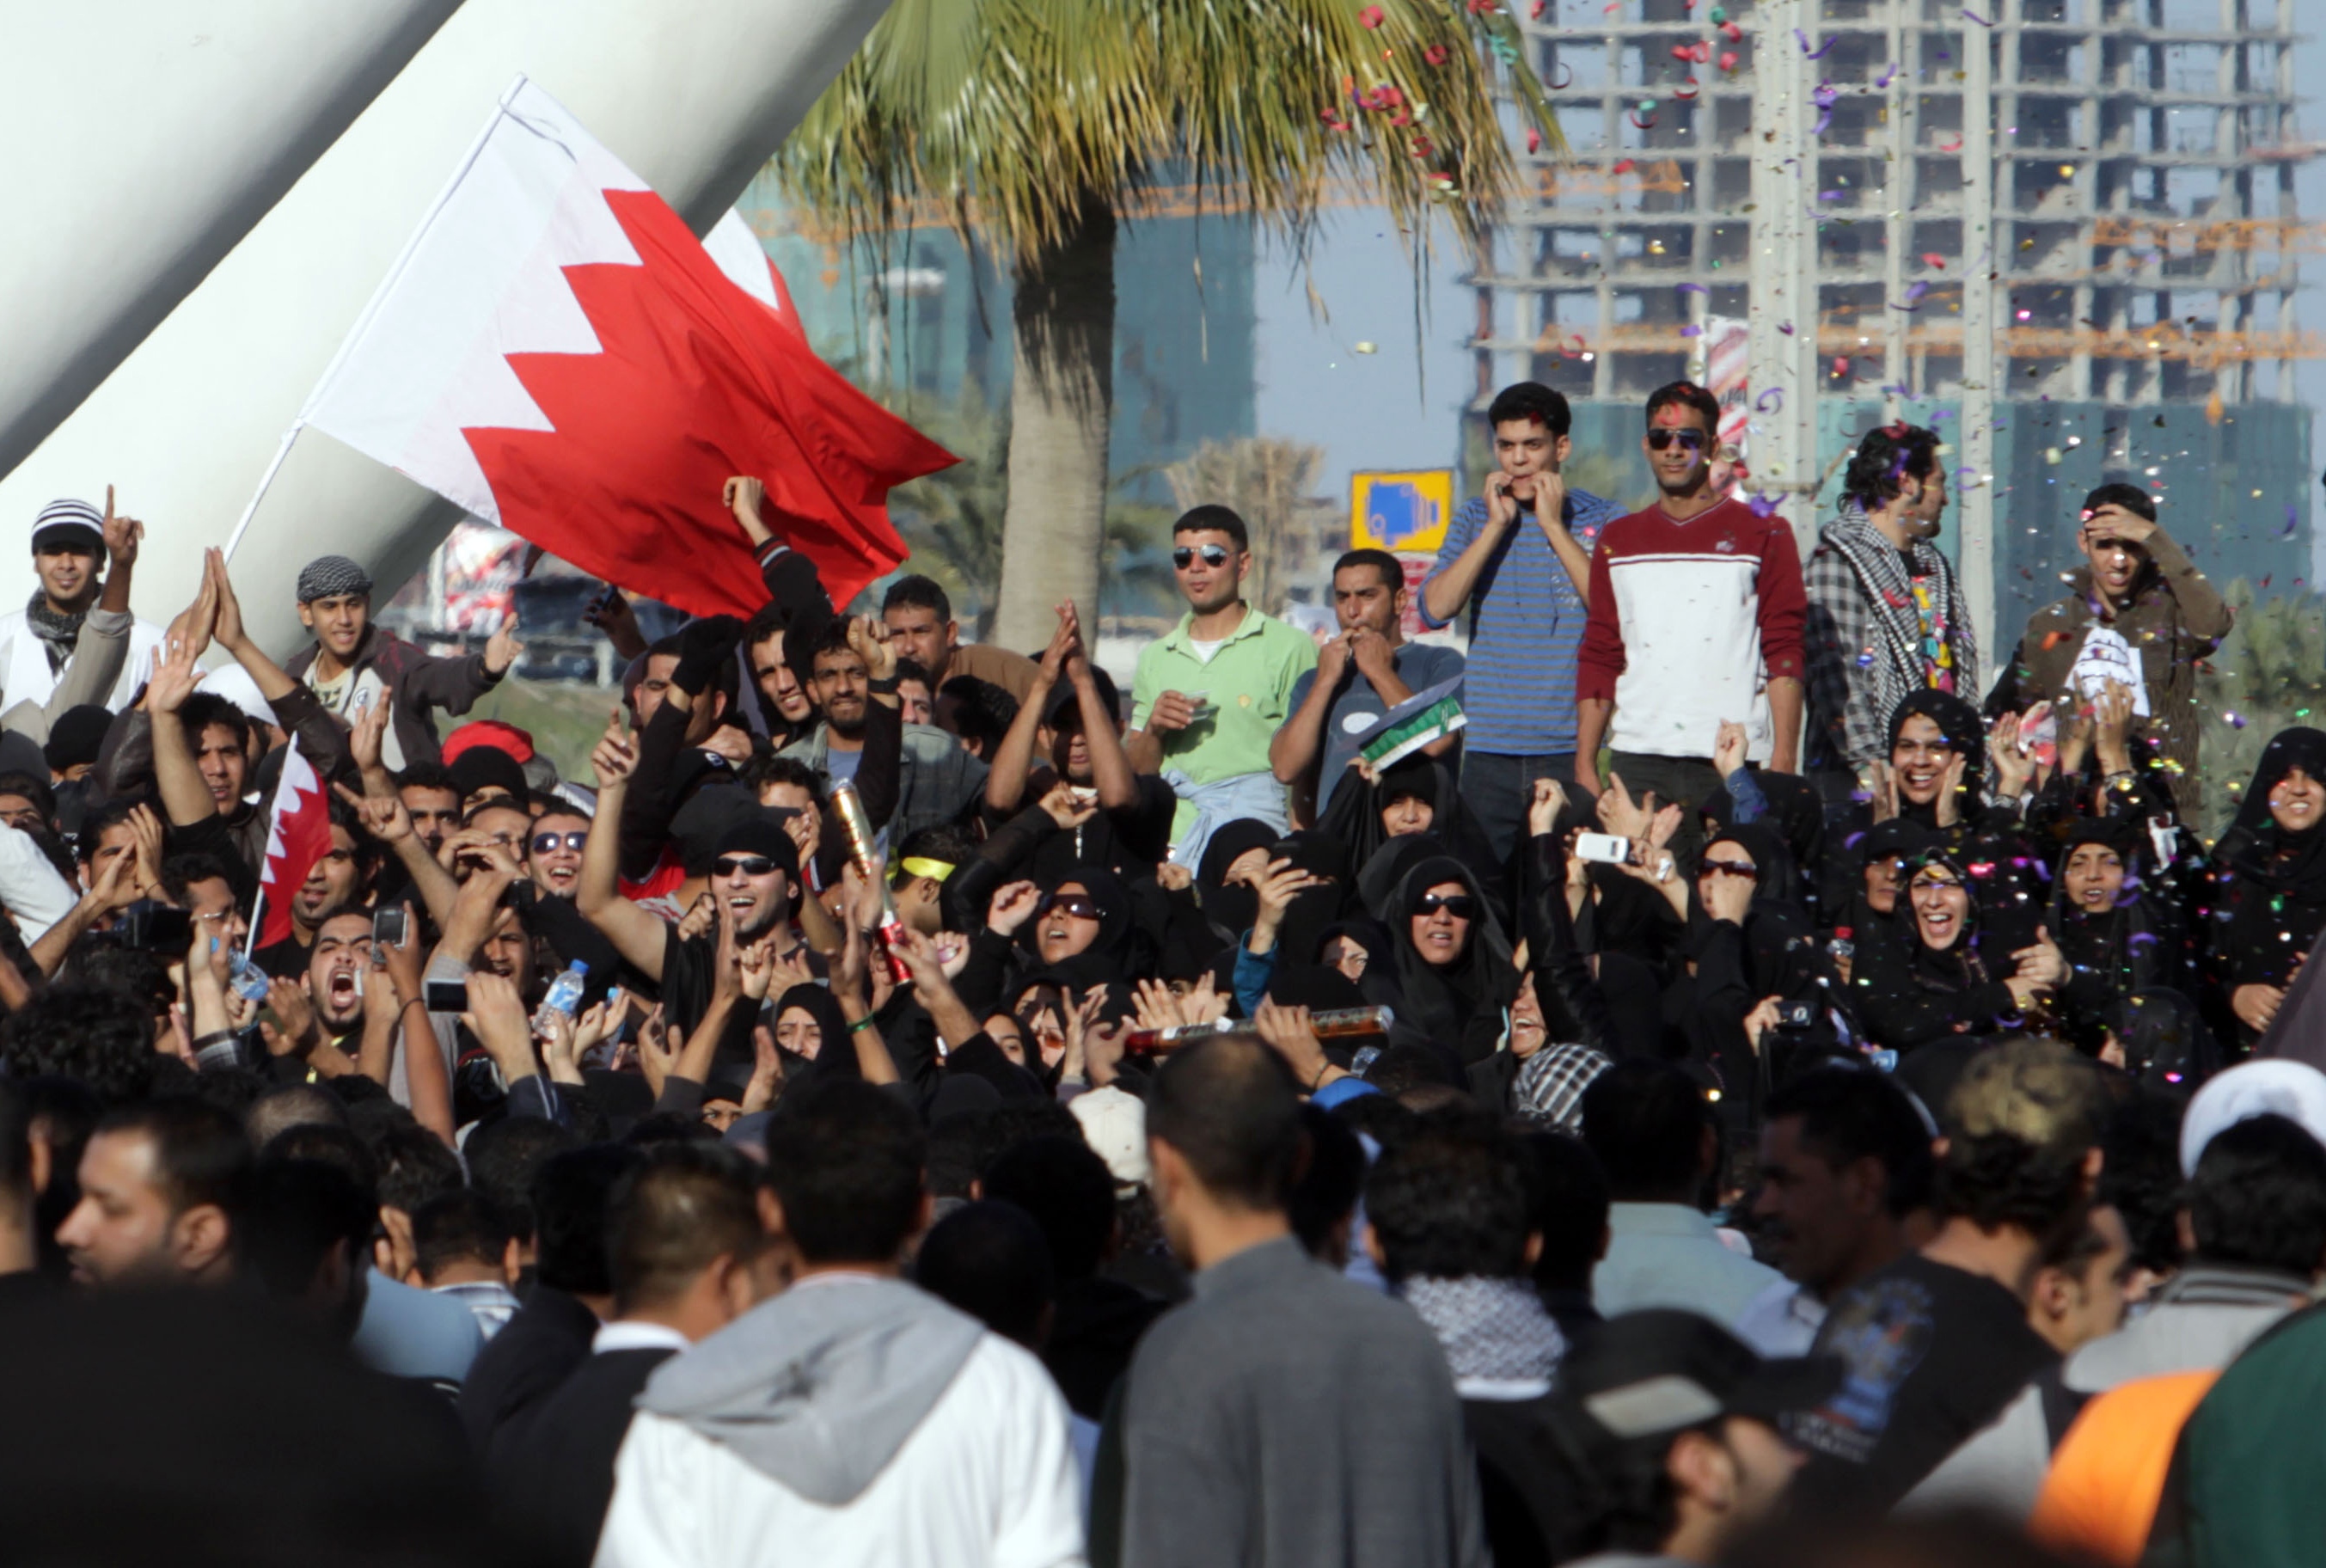 Tusentals deltog i tisdagens manifestation mot den styrande sunnimonarkin. Syftet med demonstrationen är att få ett slut på den diskriminering som shiamuslimerna länge har fått utstå - samt att genast reformera Bahrain till ett demokratiskt styre.